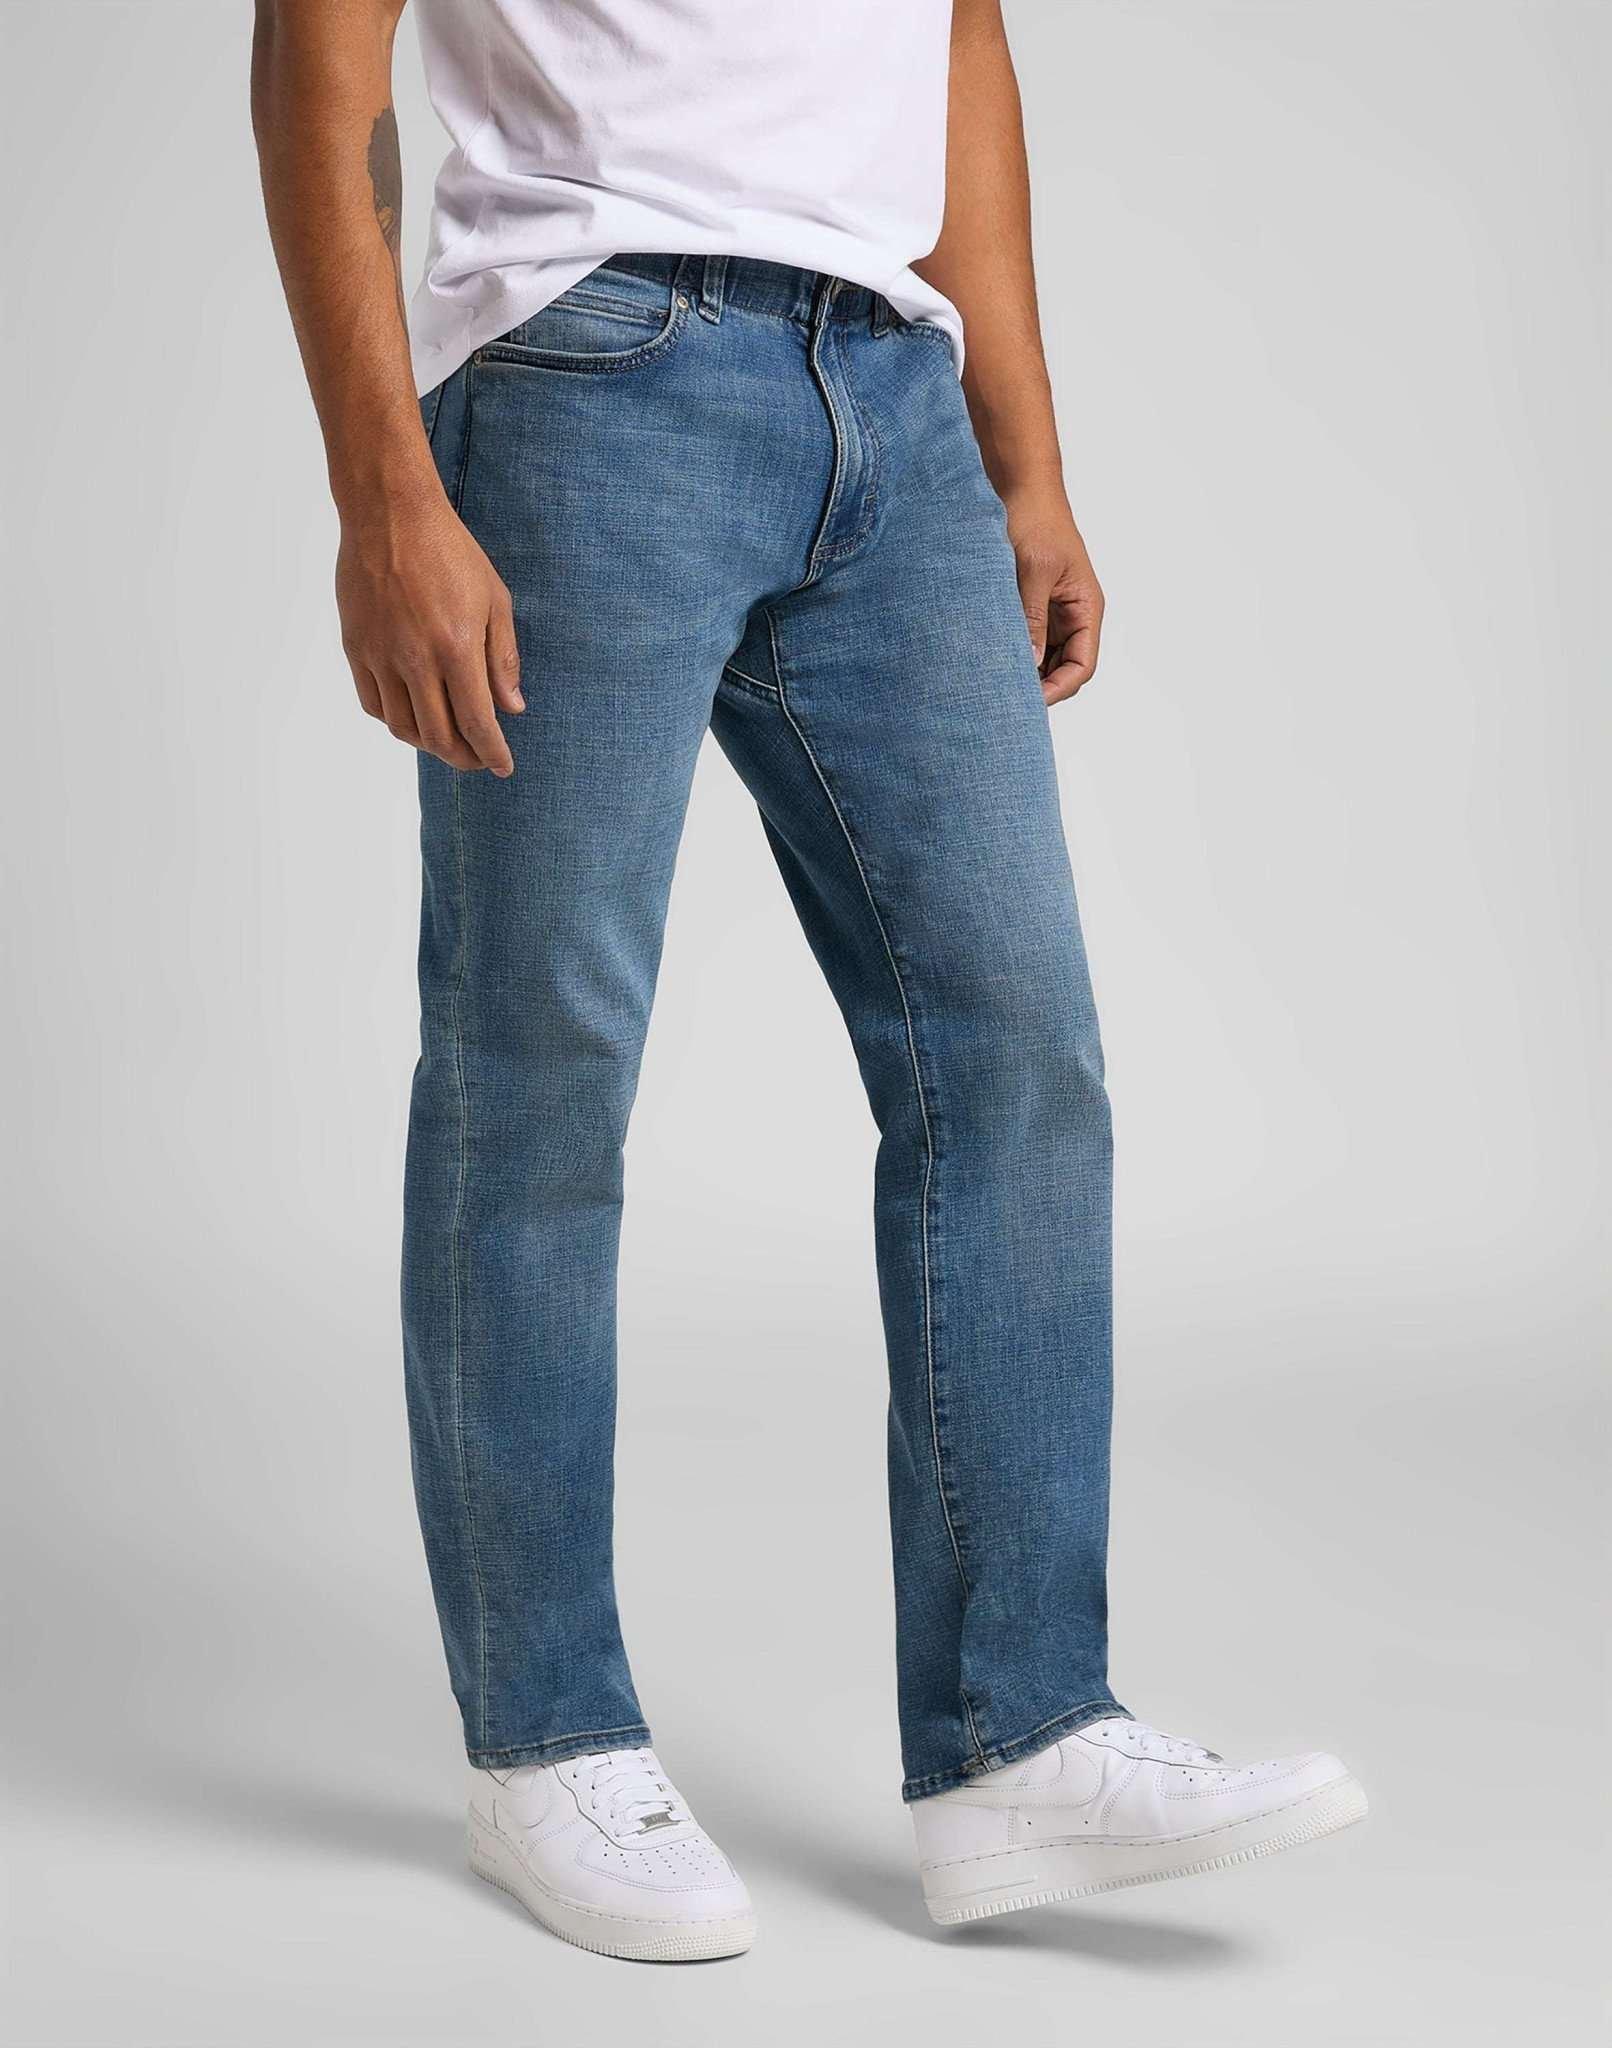 Jeans Straight Leg Mvp Herren Blau Denim L32/W30 von Lee